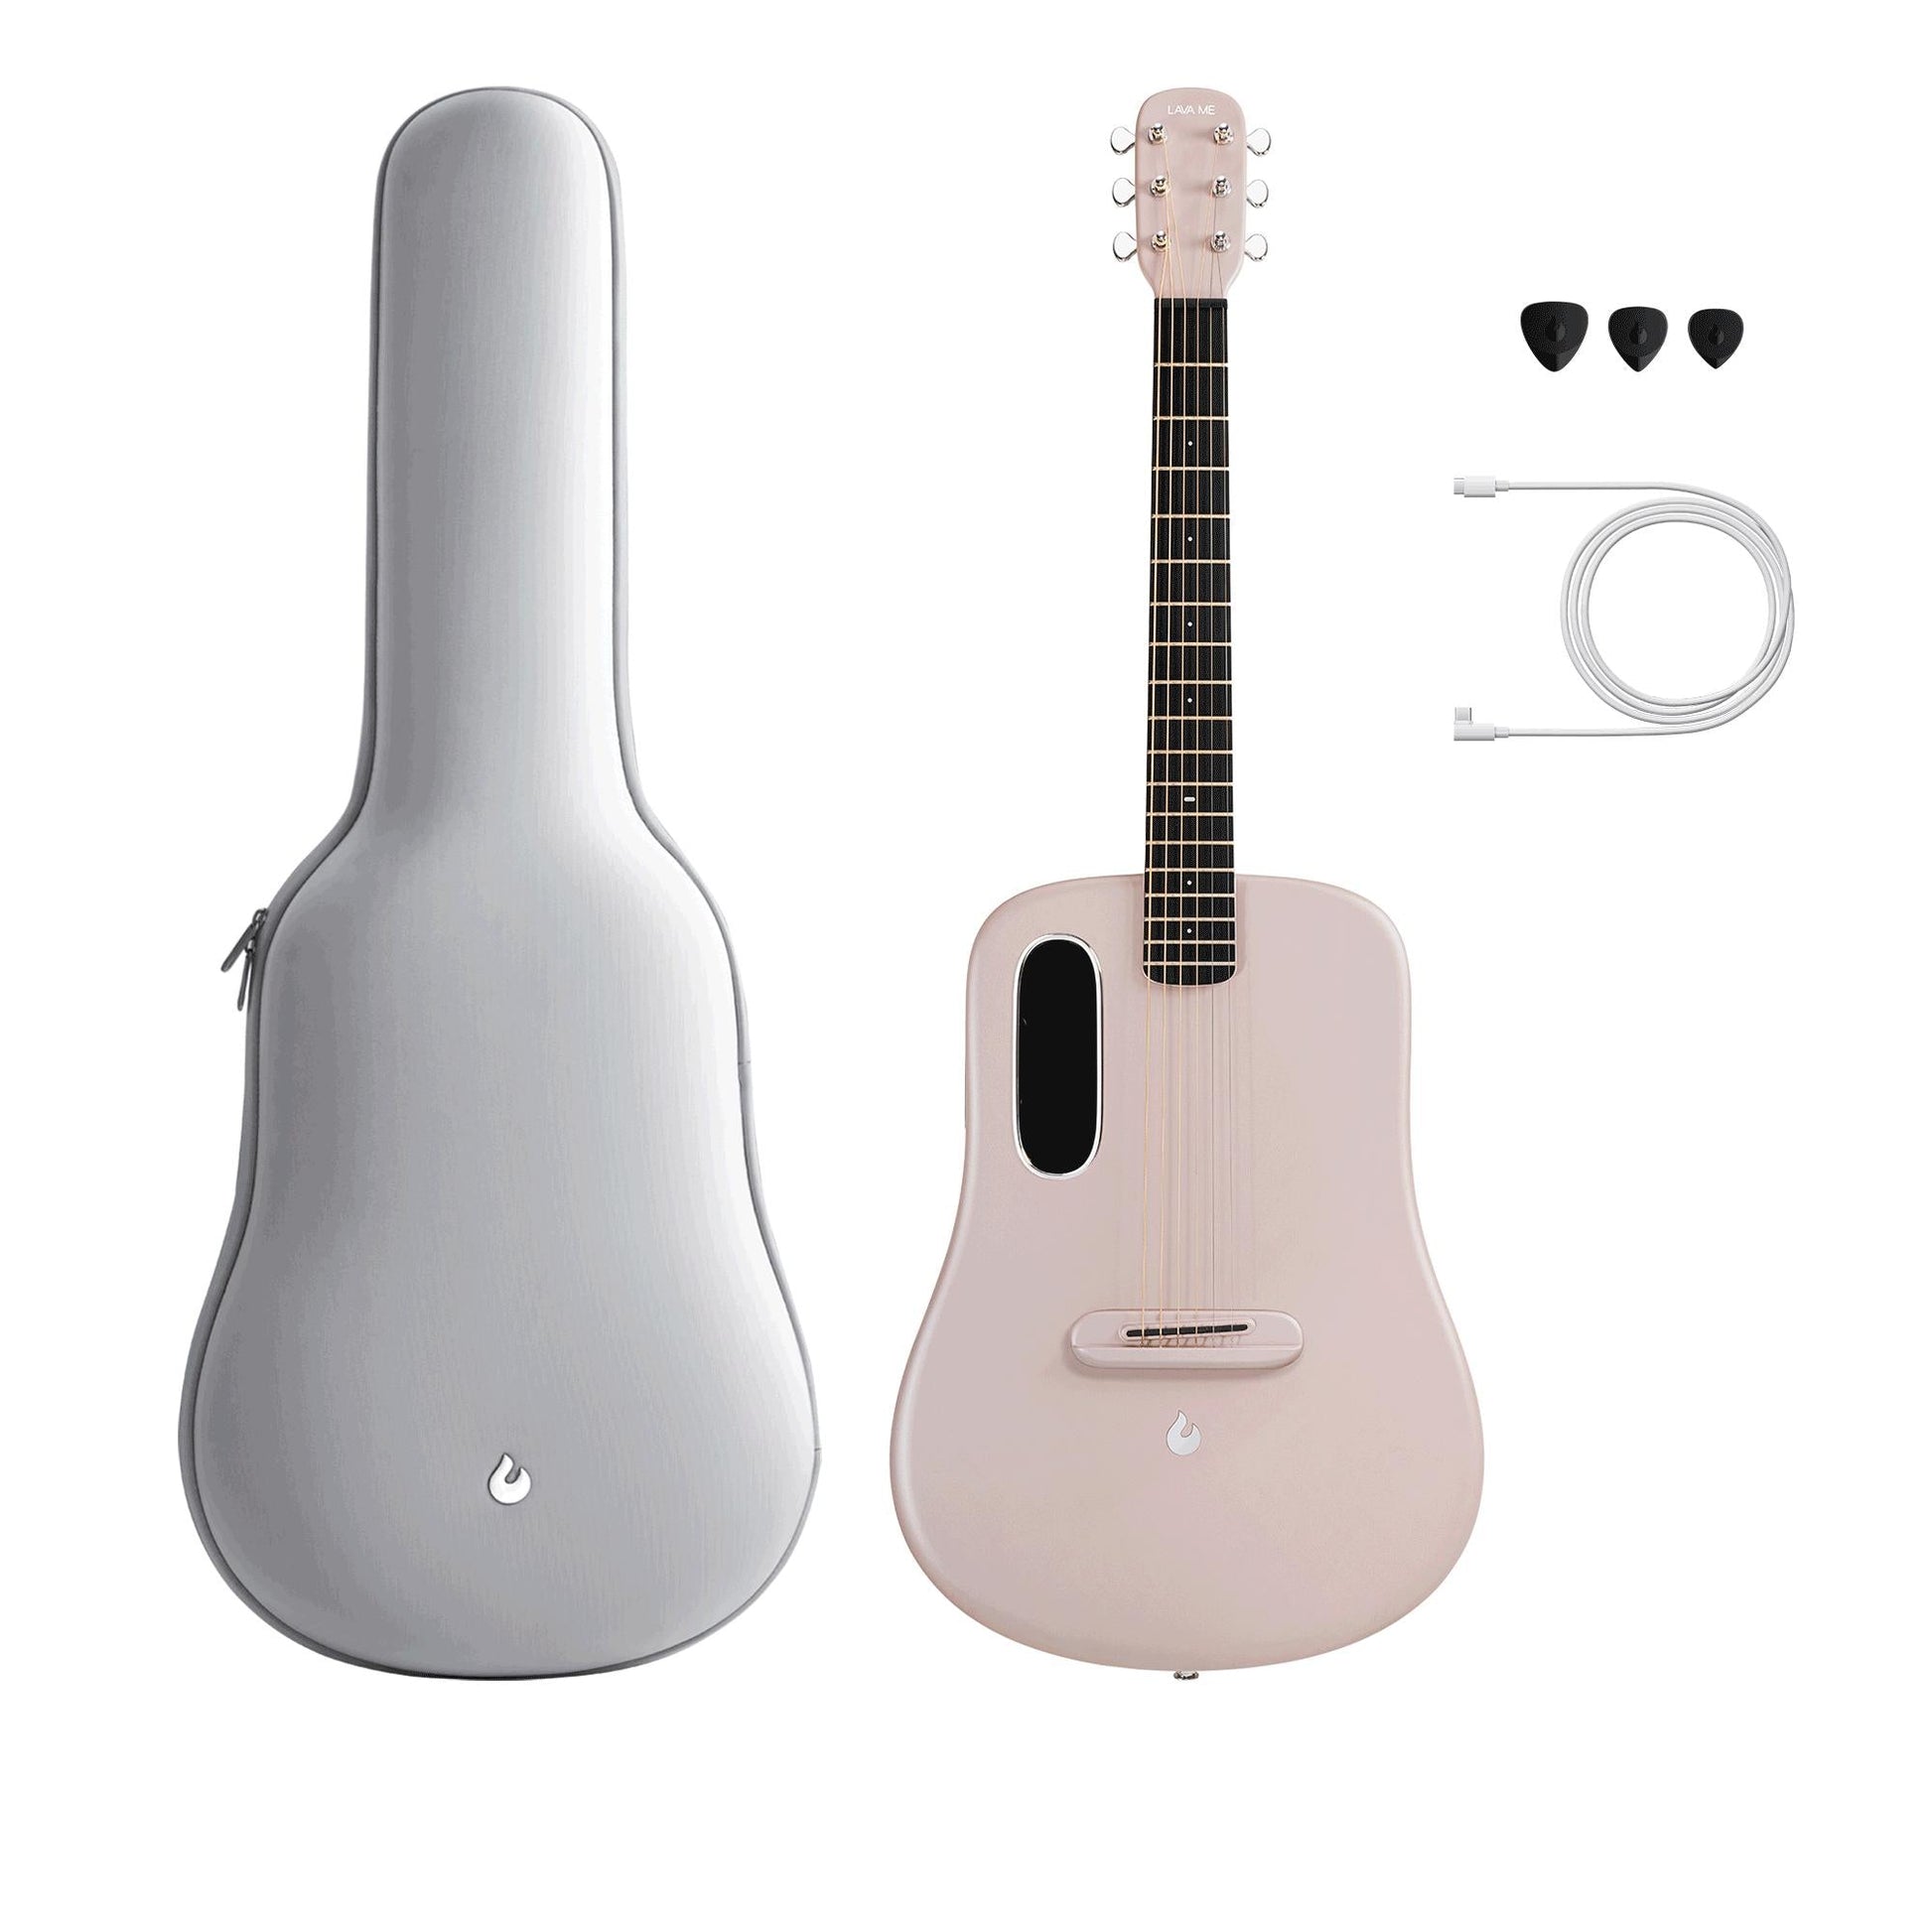 Đàn Guitar Acoustic Lava Me 3 - Size 38, Pink - Việt Music